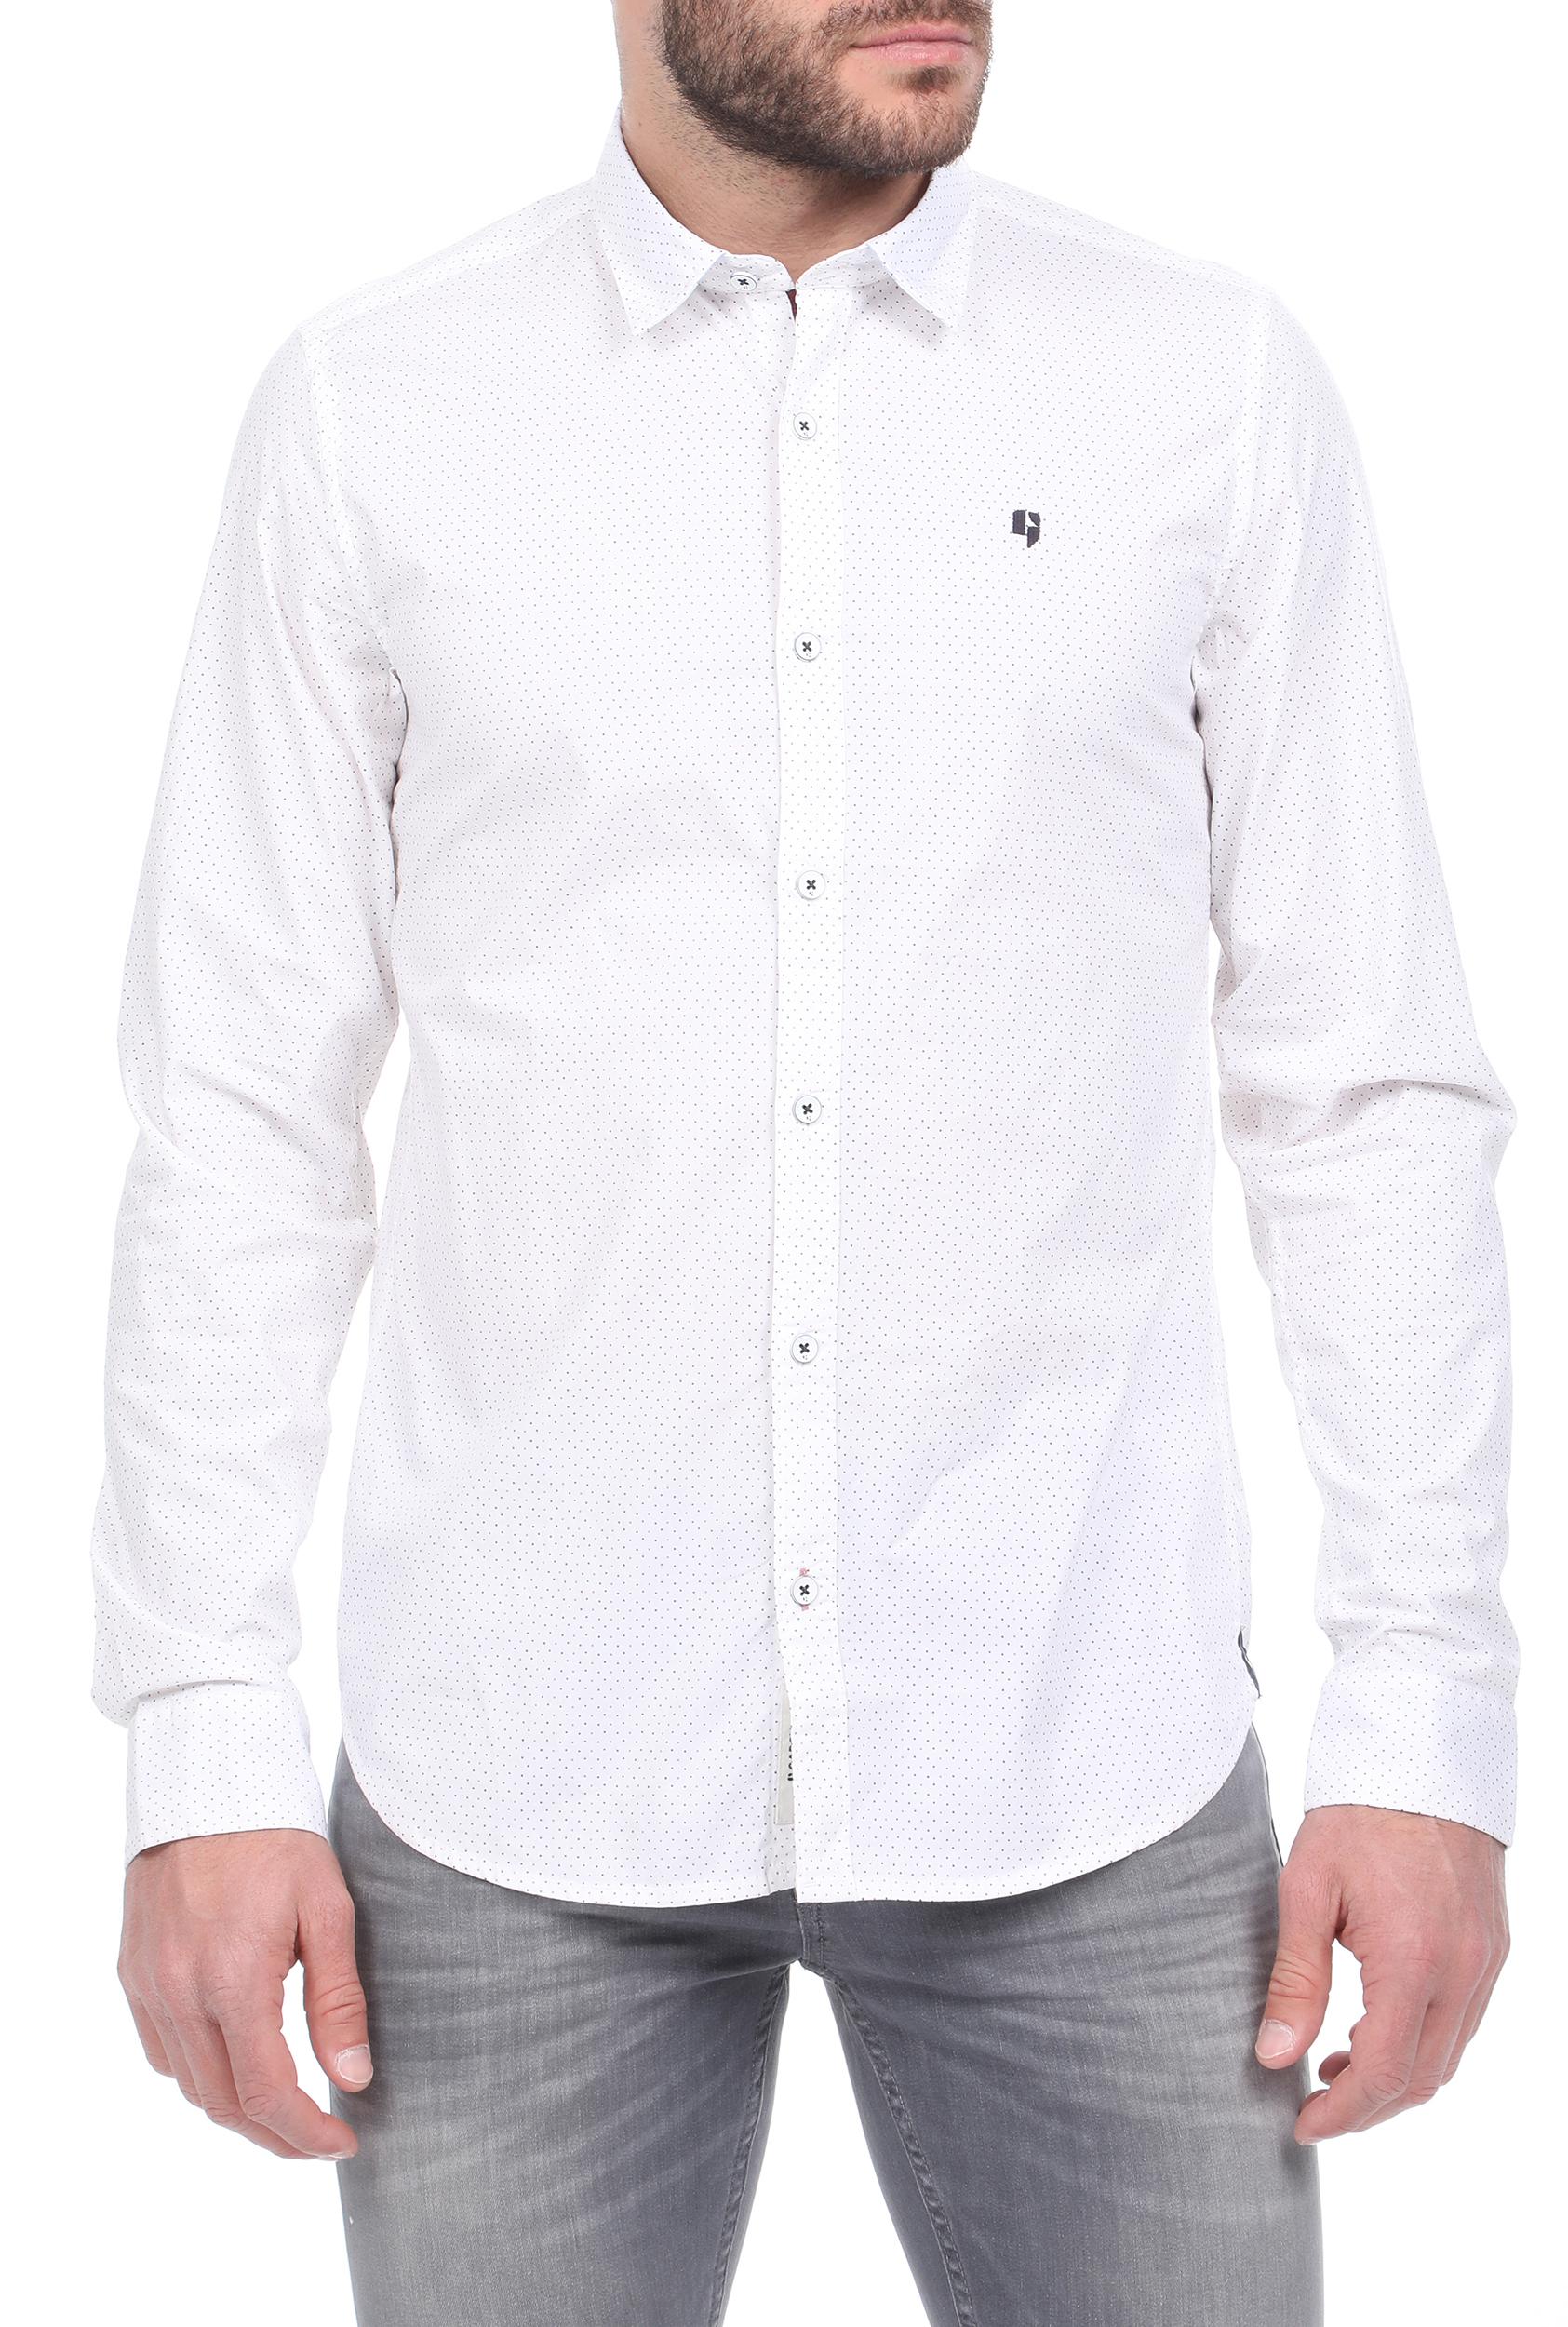 Ανδρικά/Ρούχα/Πουκάμισα/Μακρυμάνικα GARCIA JEANS - Ανδρικό πουκάμισο GARCIA JEANS λευκό μπλε